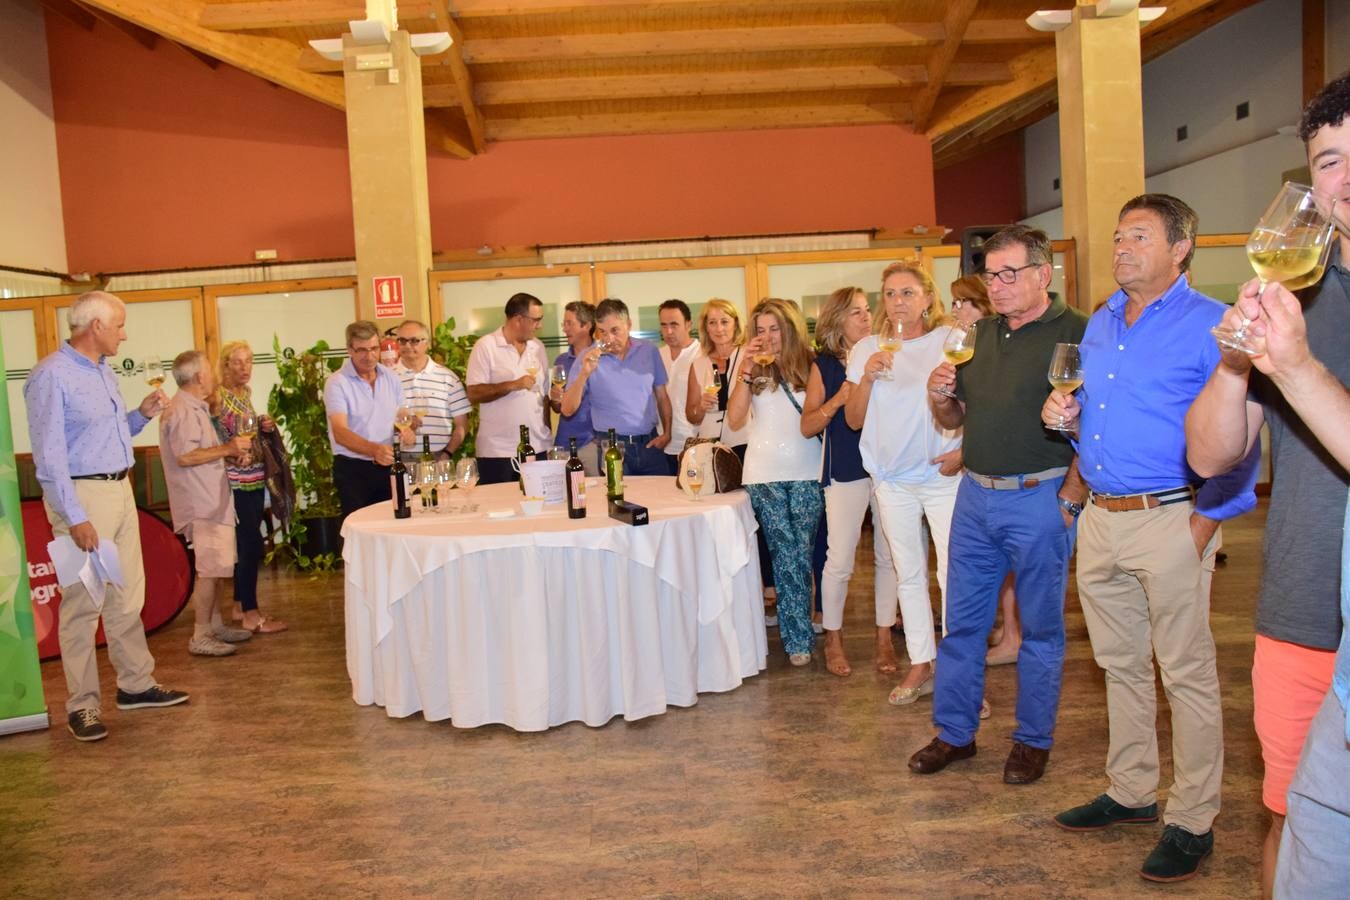 Los participantes en el torneo Viña Ijalba disfrutaron tras la jornada de varios vinos de la bodega logroñesa.